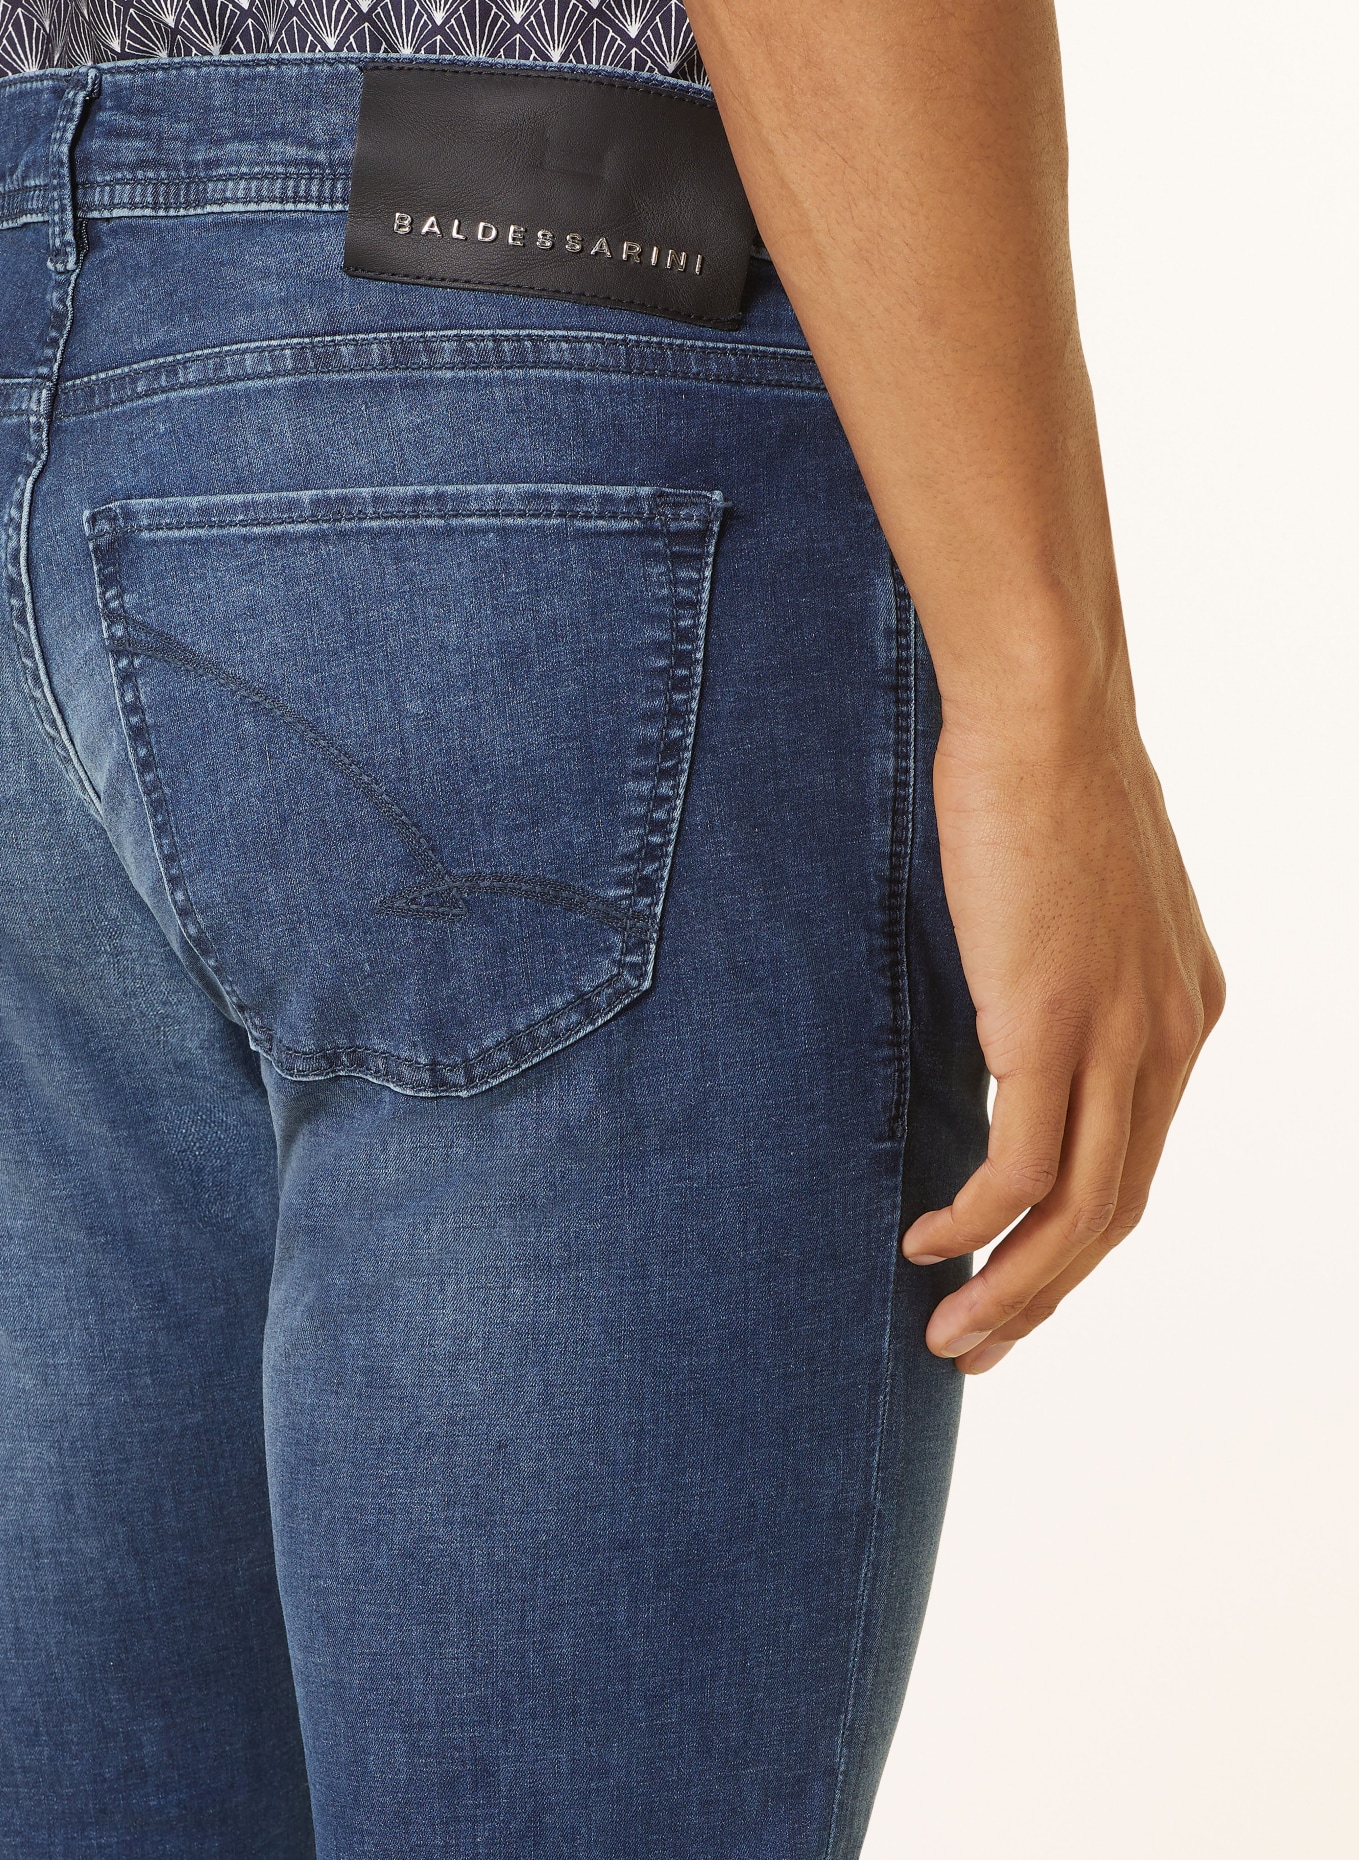 BALDESSARINI Jeans regular fit, Color: 6815 dark blue used whisker (Image 6)